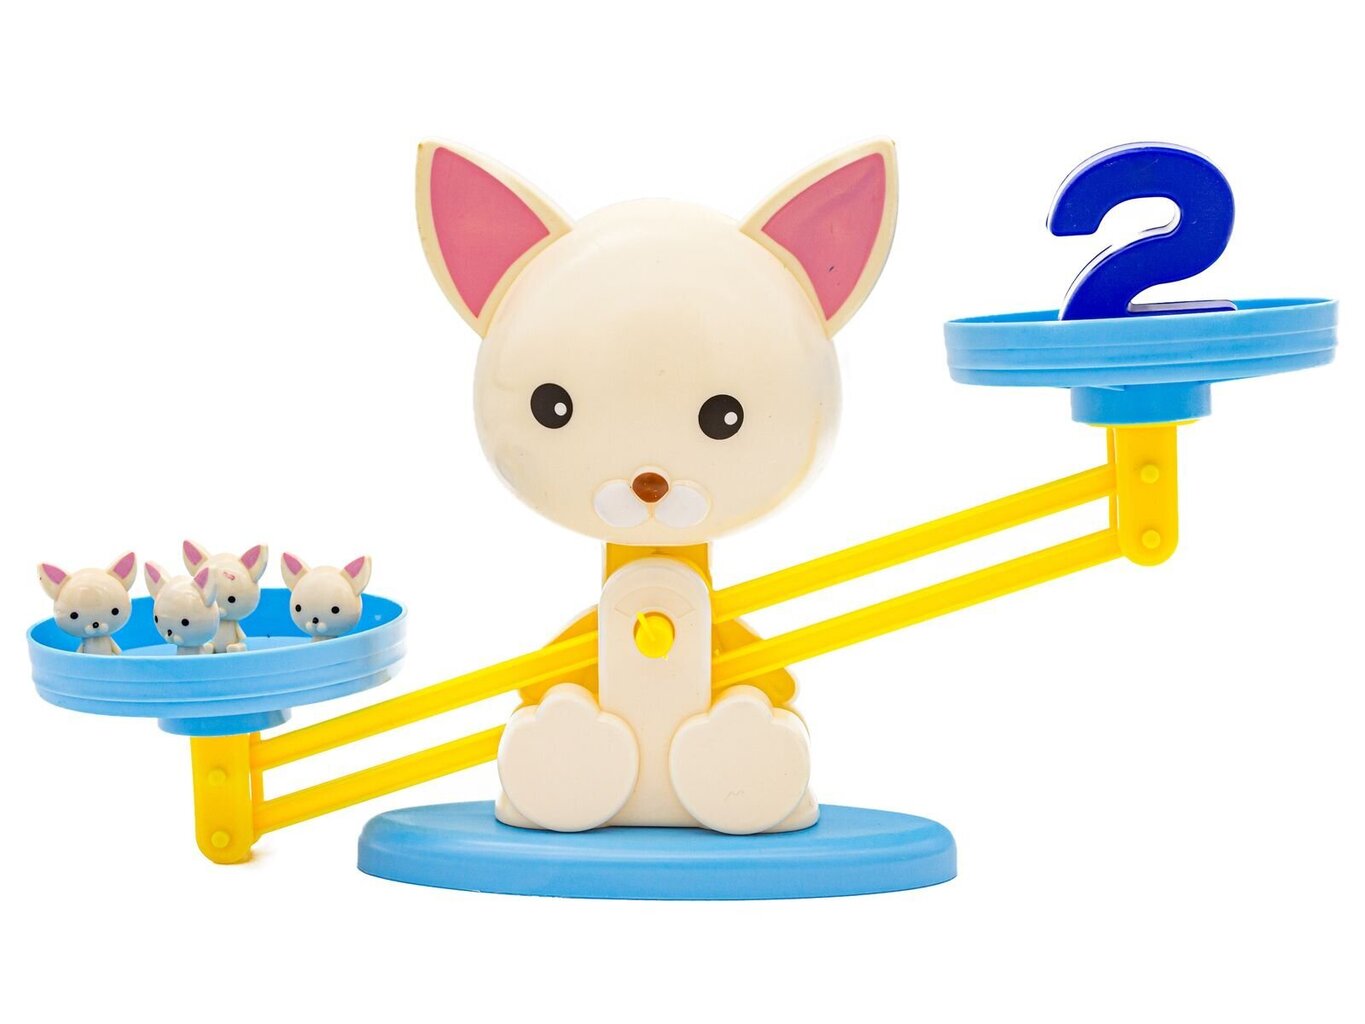 Izglītojoša līdzsvarošanas spēle Chrld, Puppy Up Chrld cena un informācija | Attīstošās rotaļlietas | 220.lv